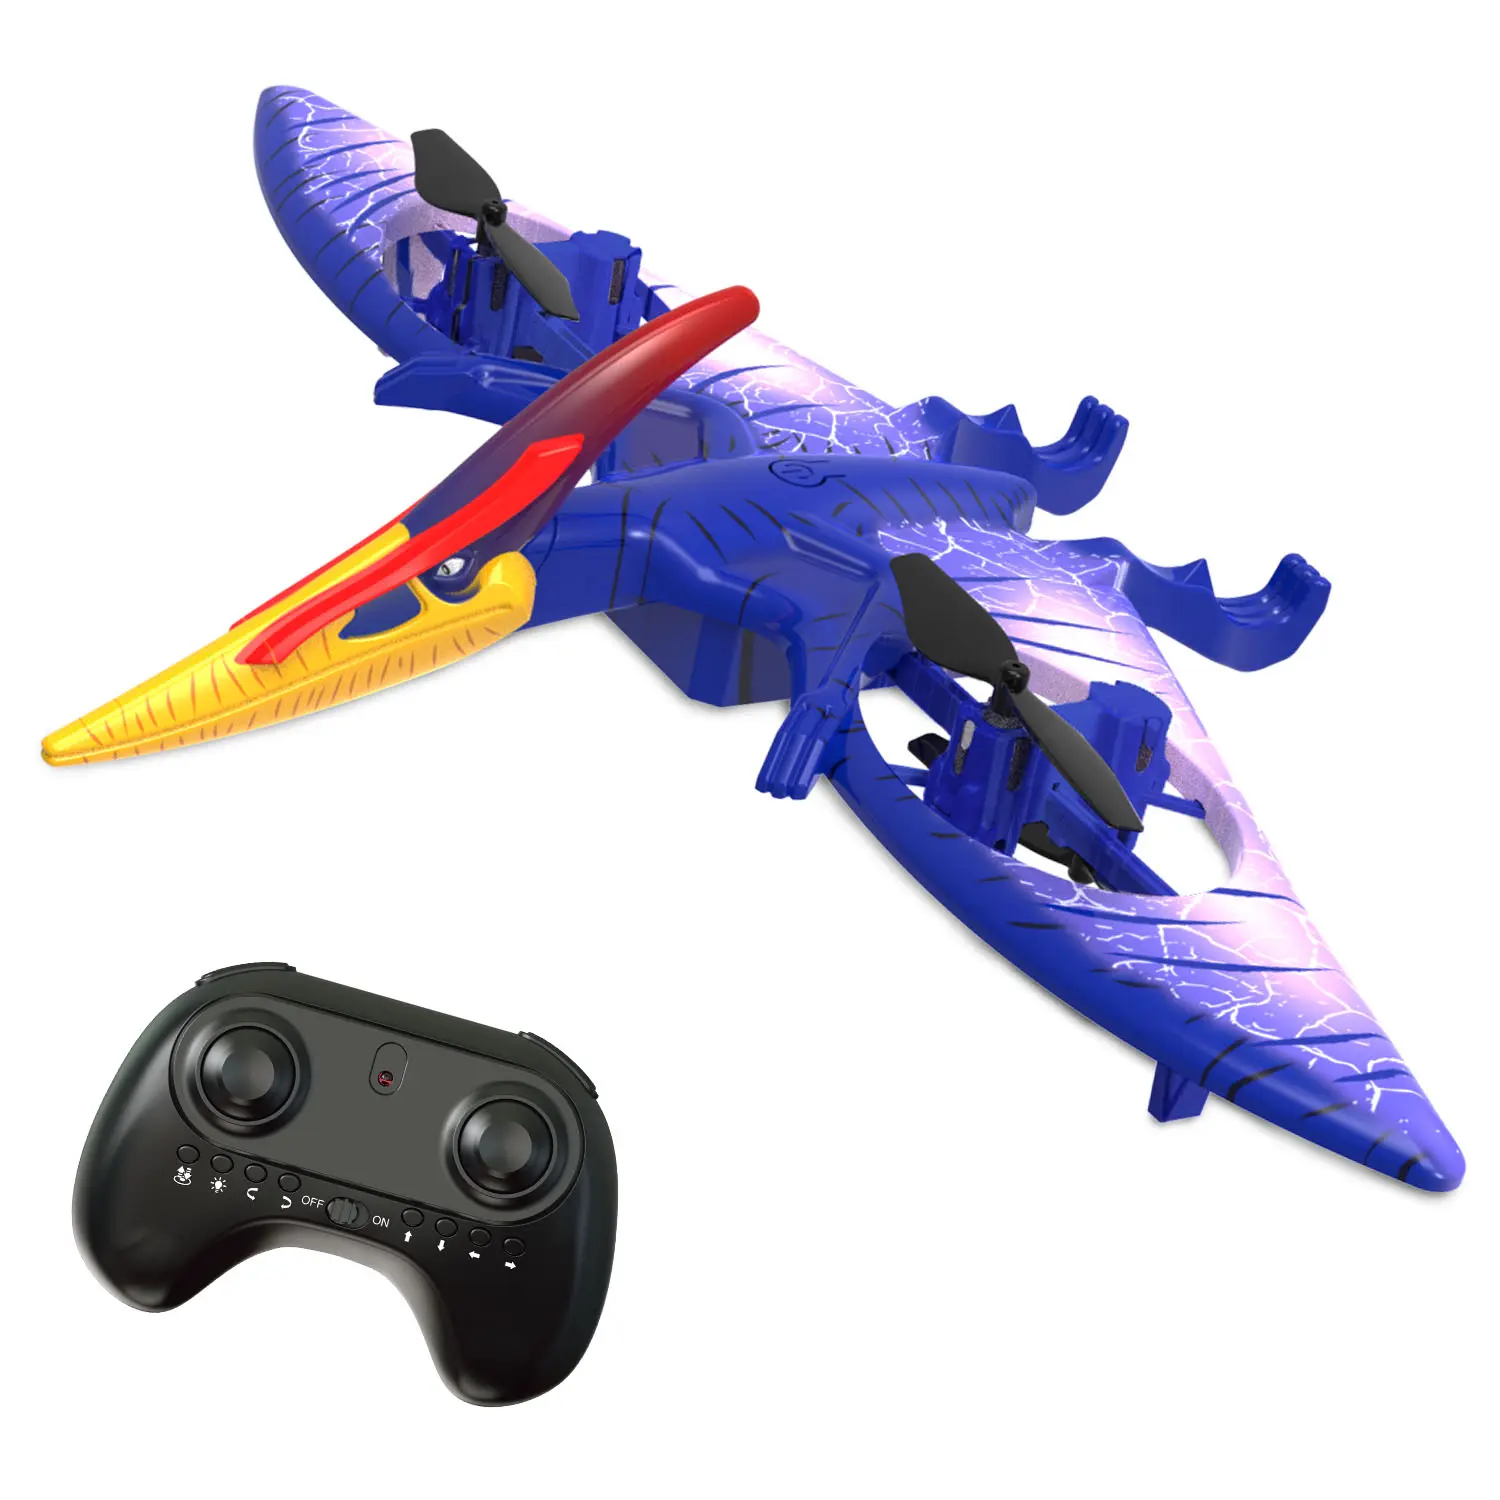 Mainan Drone Rc Pterosaurus, Mainan Pesawat Terbang Dinosaurus Remote Control 2.4GHz 4CH dengan Suara